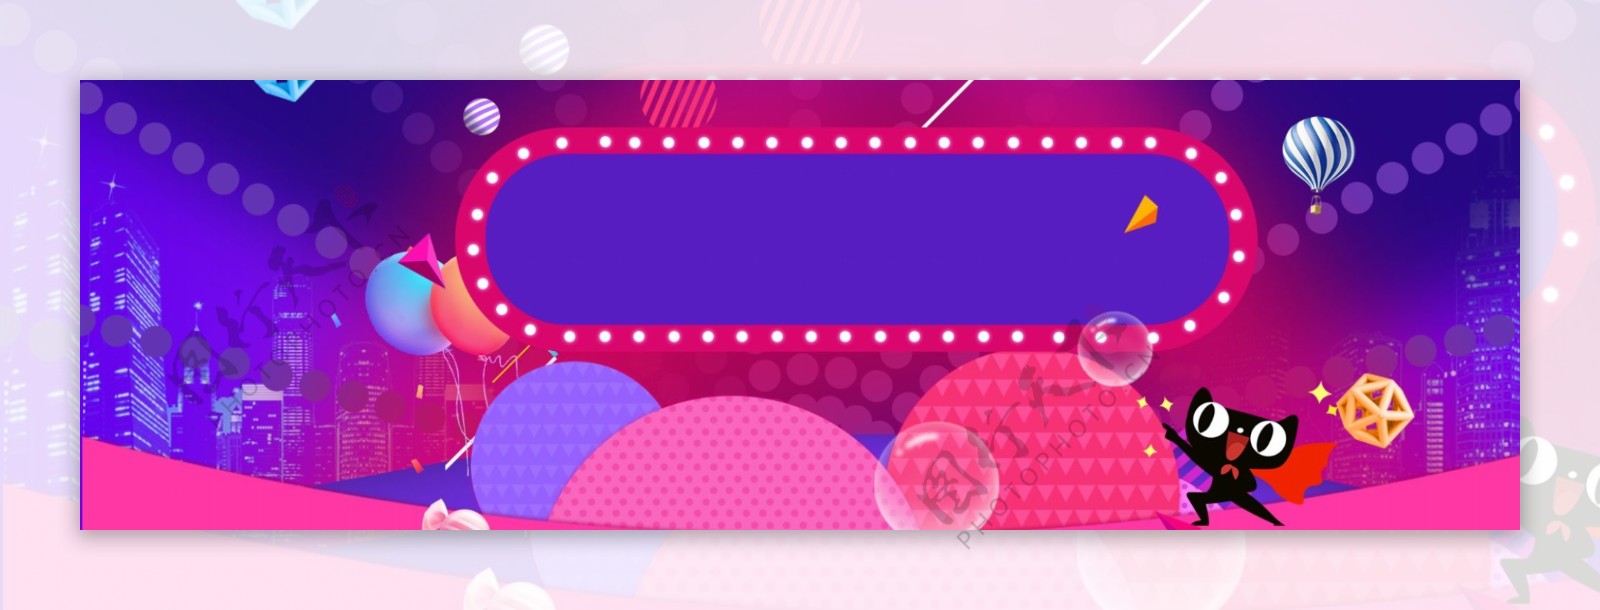 紫色夏末促销banner背景